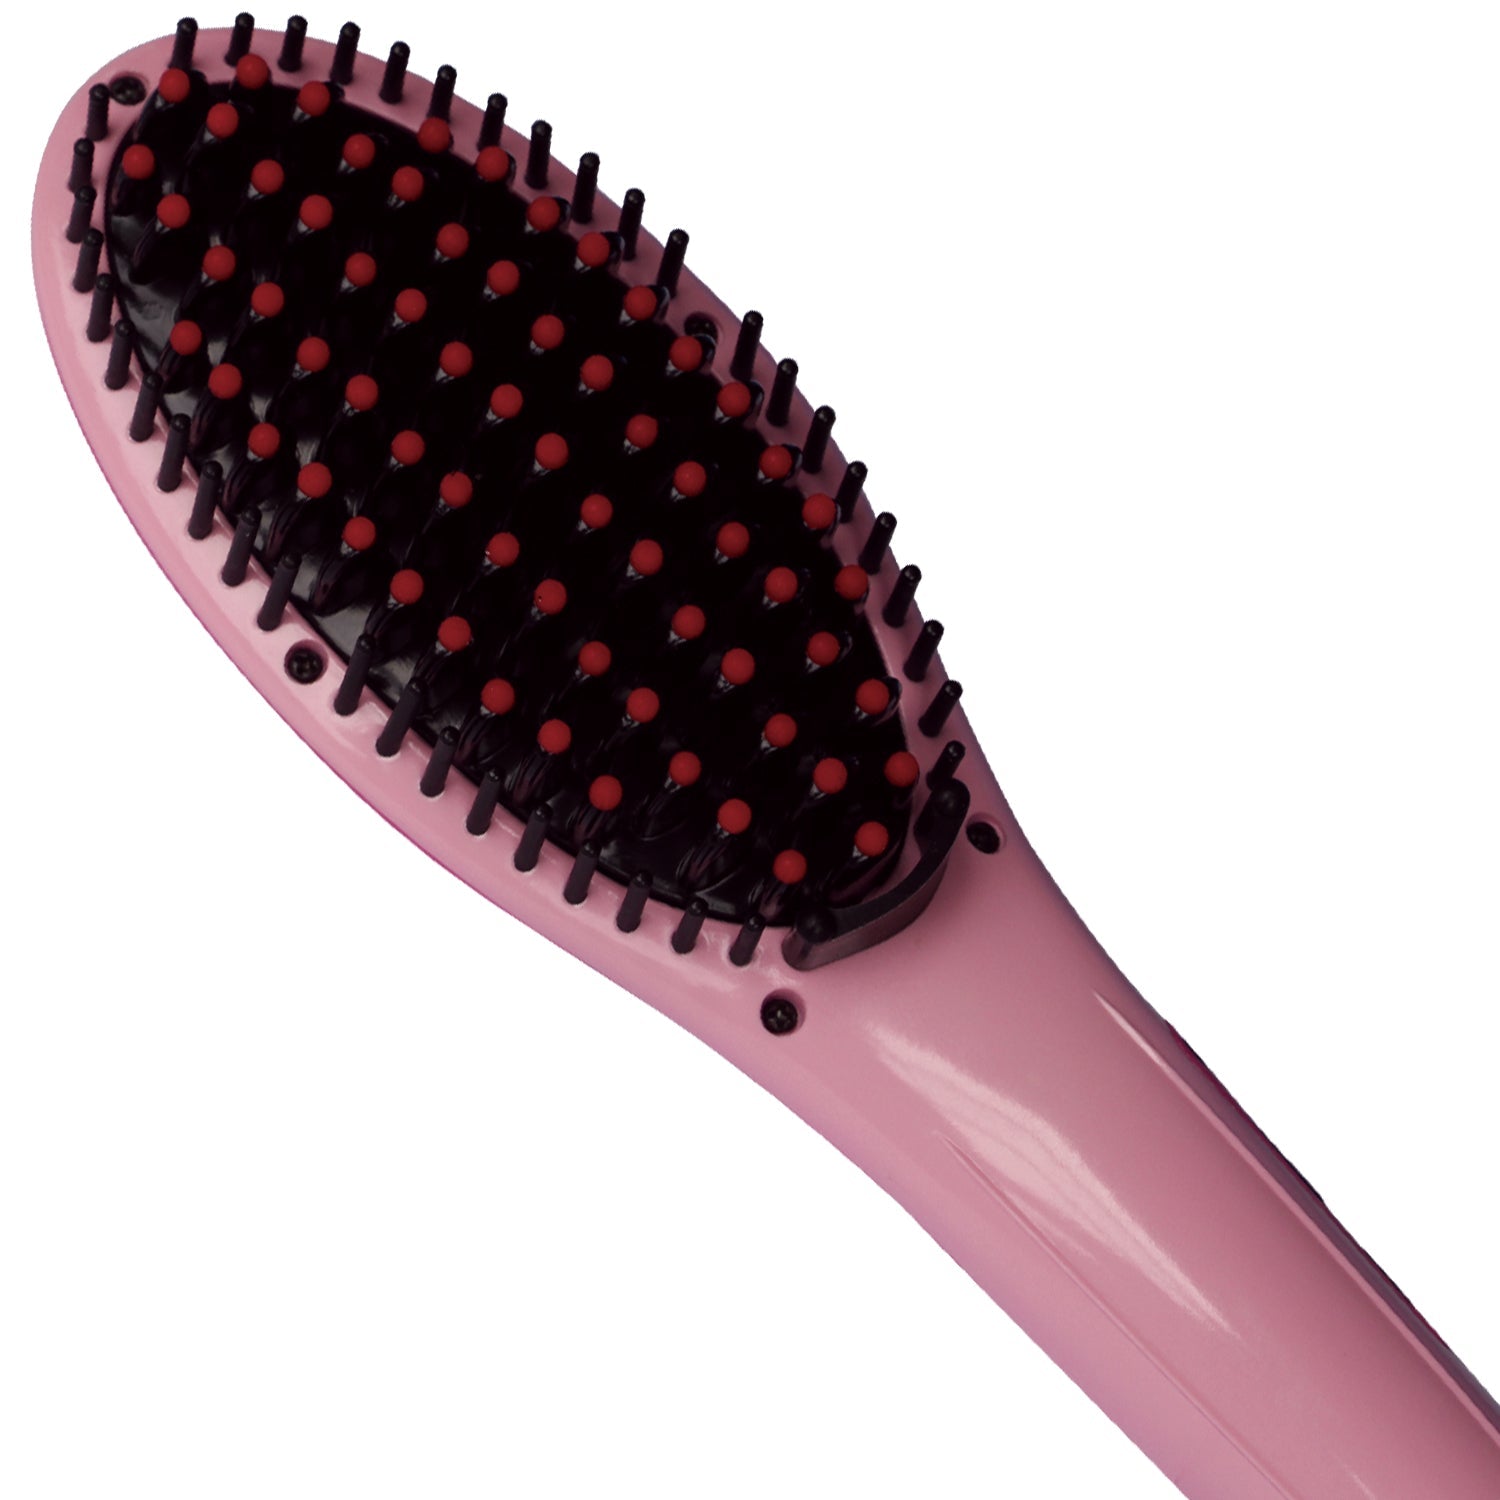 Cenocco CC-9011: Roze haarstyler van de tweede generatie met snelle werking - Bivakshop